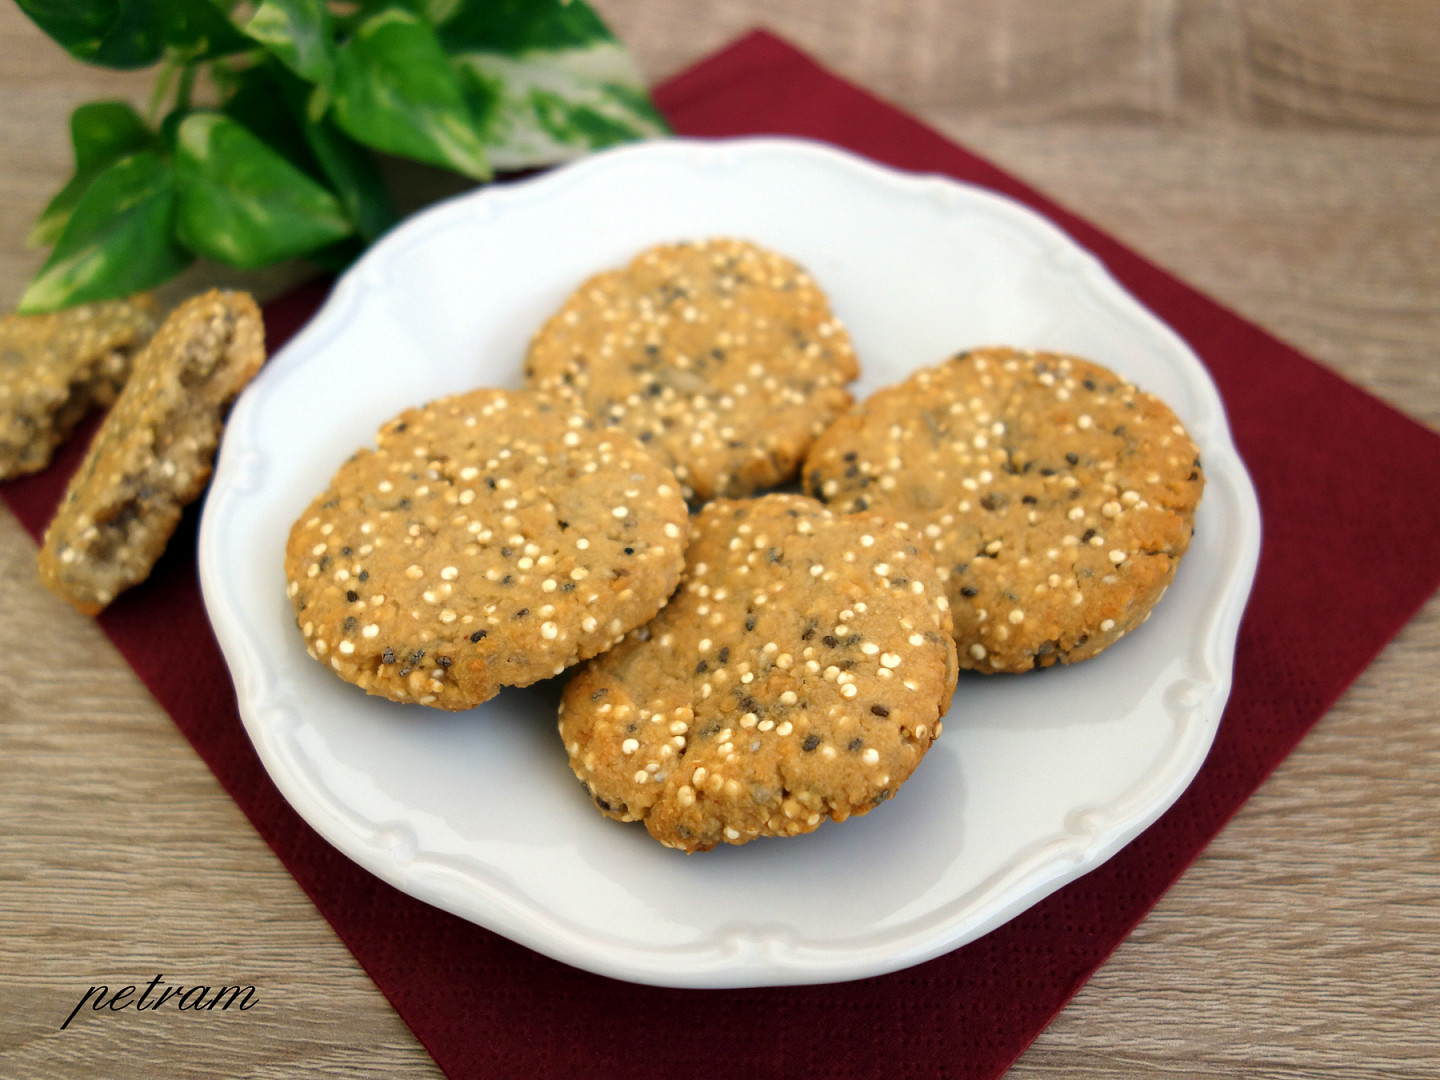 Arašídové sušenky s quinoou (bez lepku, mléka a vajec)